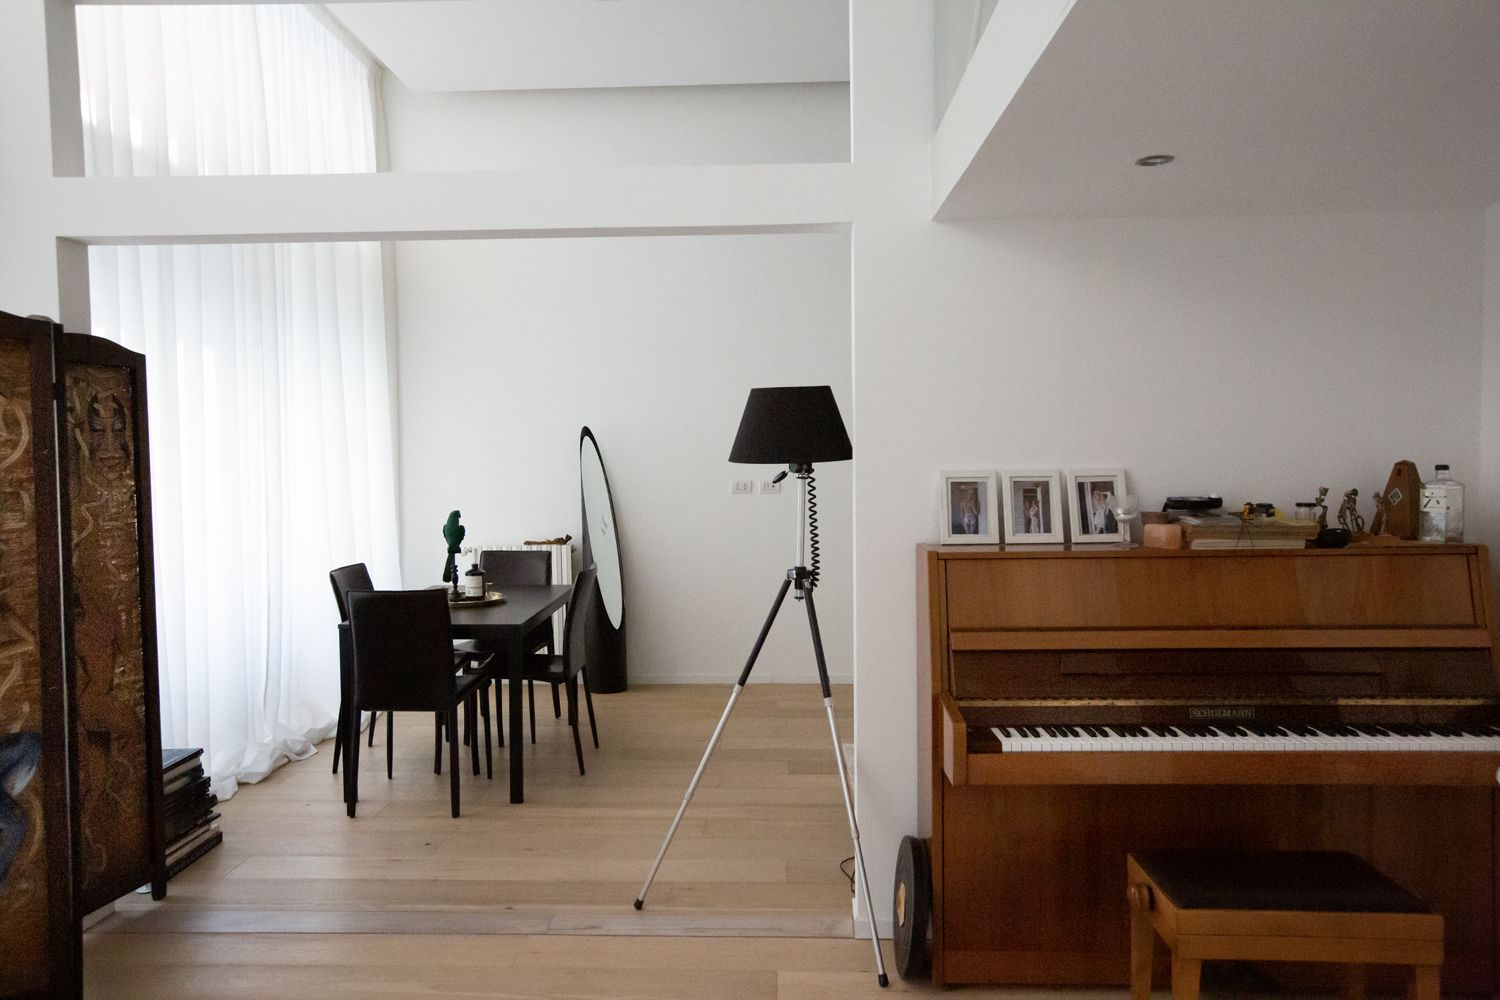 Location con pianoforte shooting fotografico milano